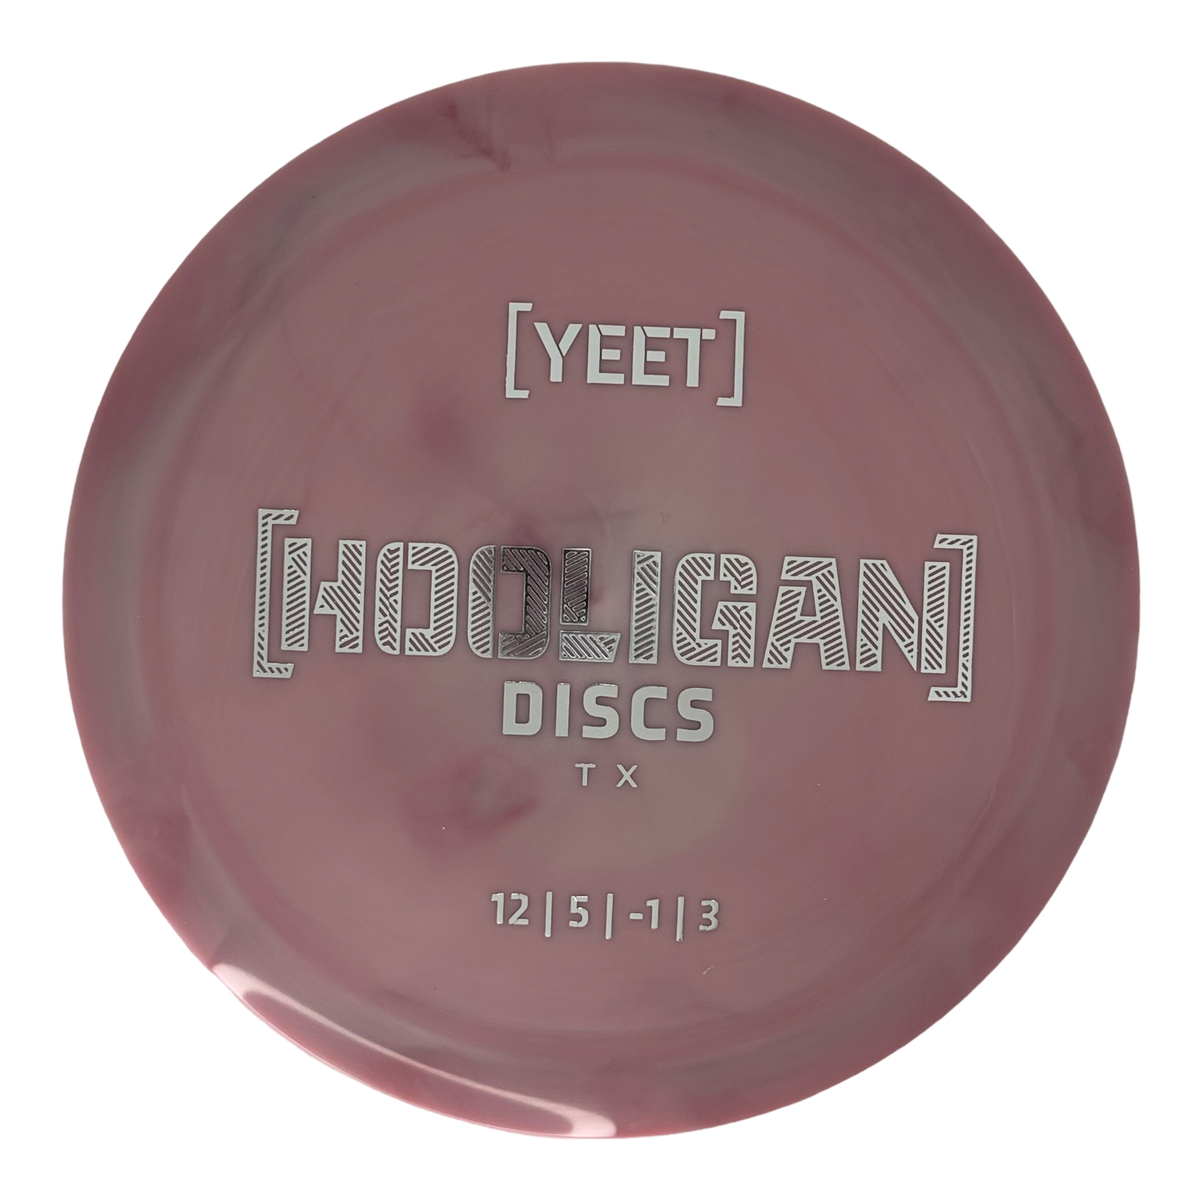 Hooligan Discs Alpha Yeet